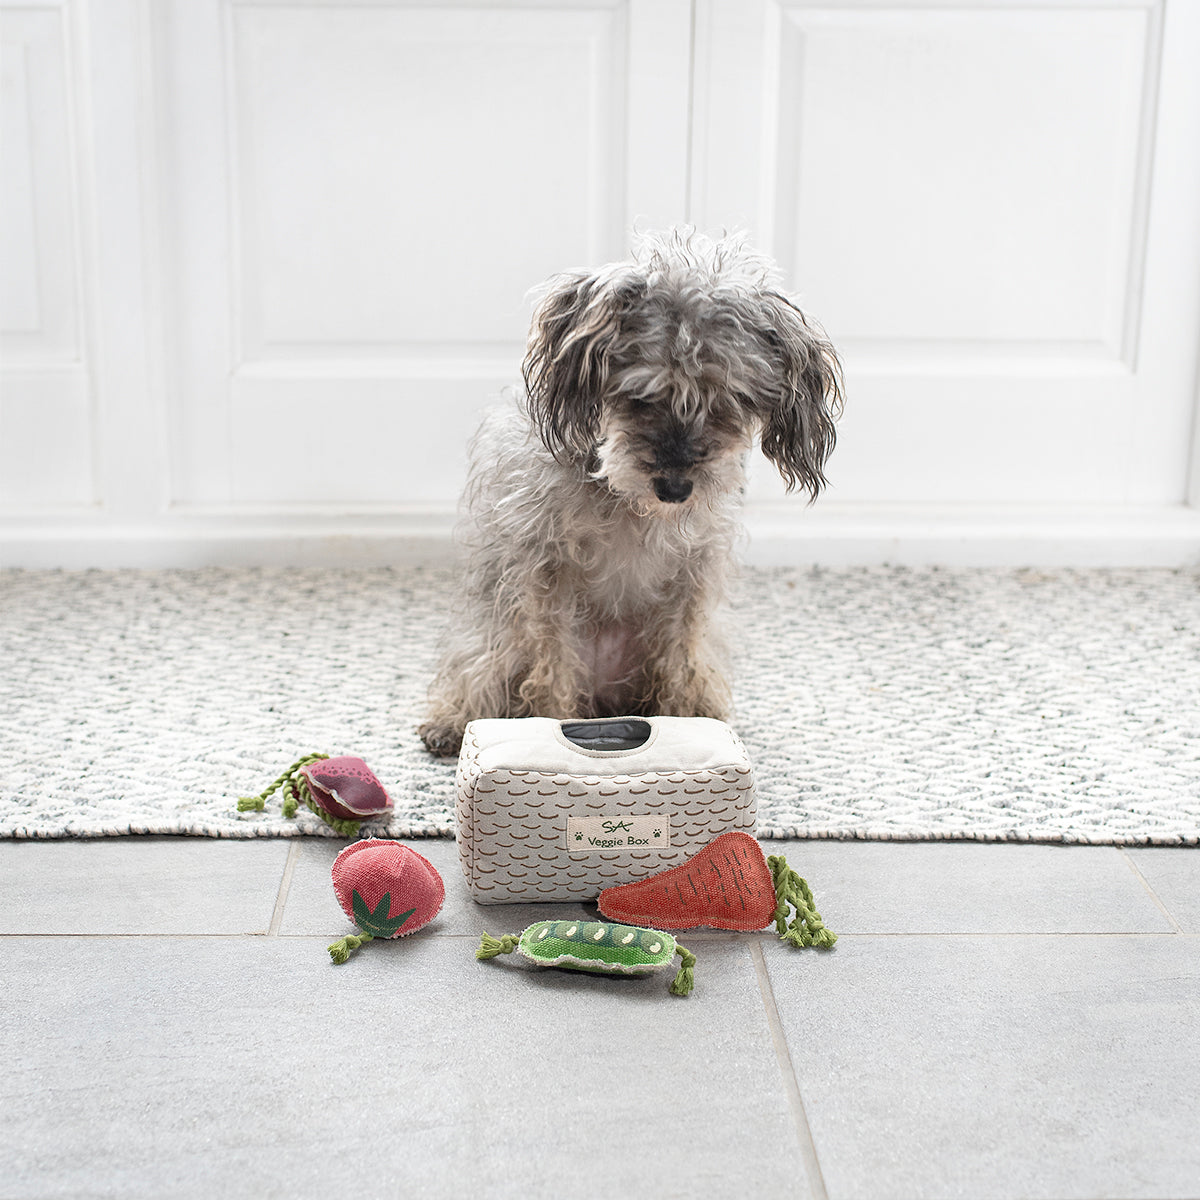 Veggie Box Dog Toy Set by Sophie Allport